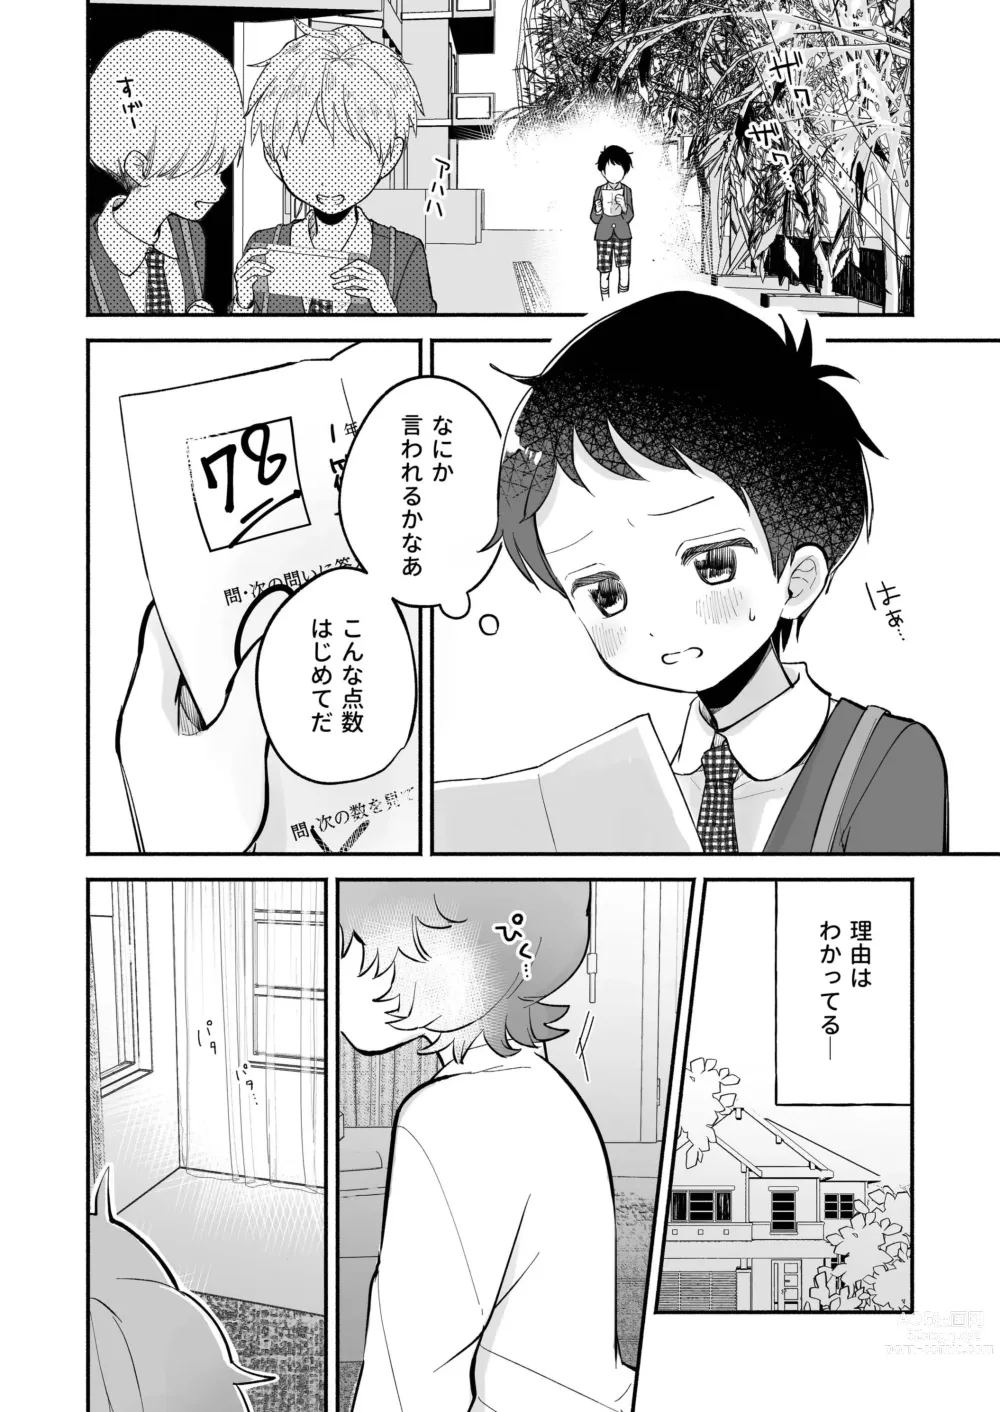 Page 4 of doujinshi Riku to Fuu Akachan Dekireba Kazoku ni Nareru no ka na